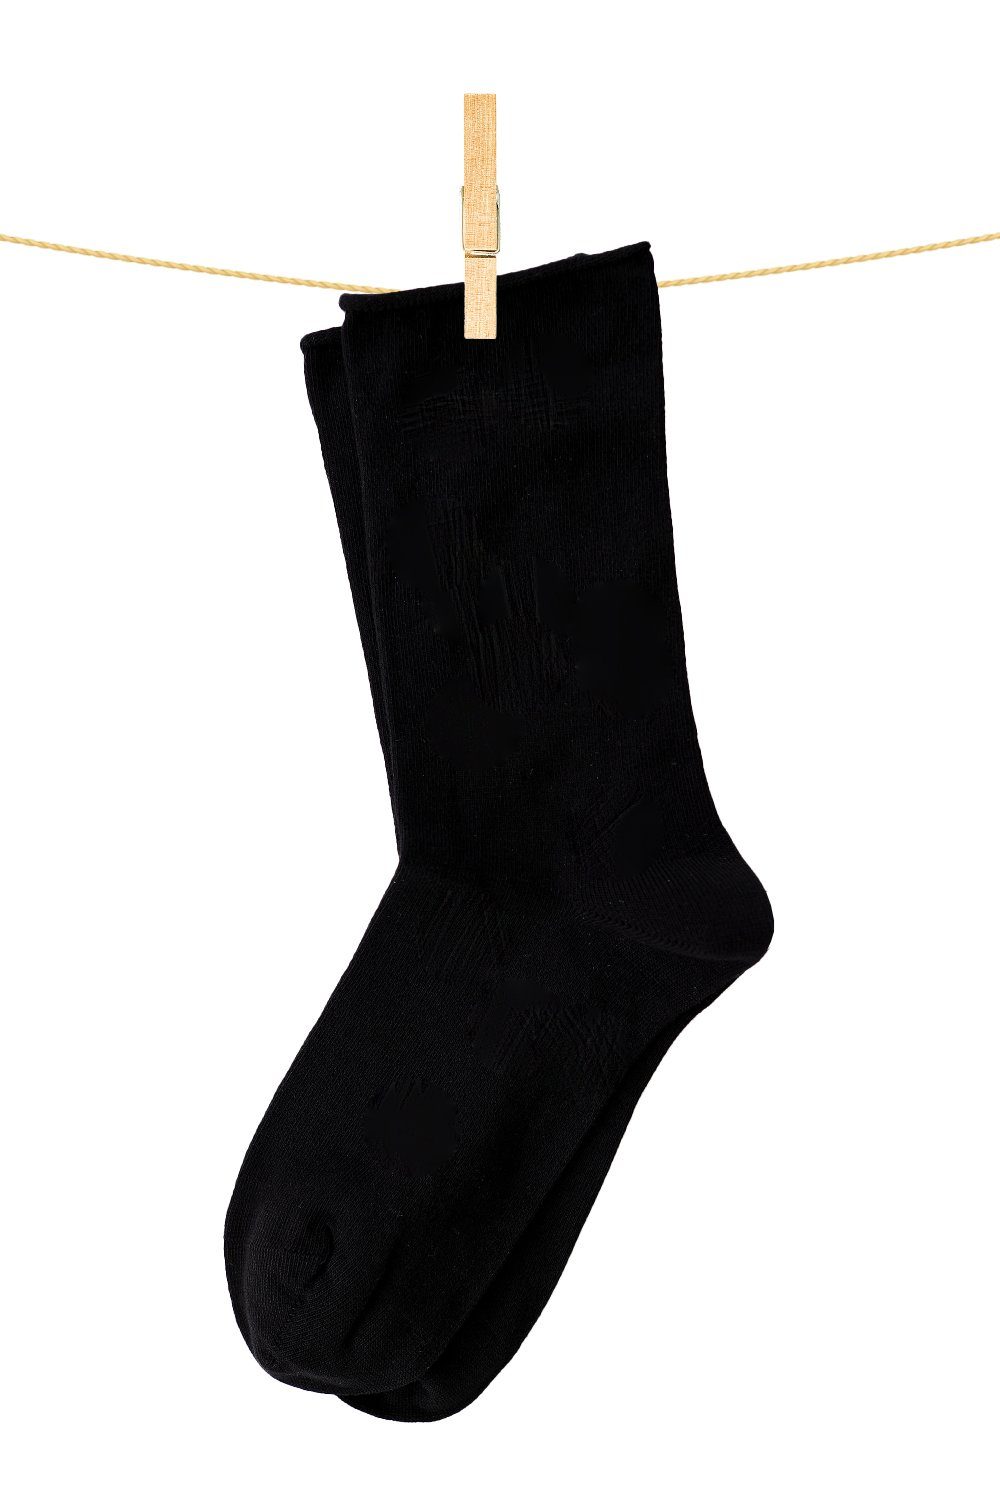 Socken Crönert schwarz Uni Longsocks 18600